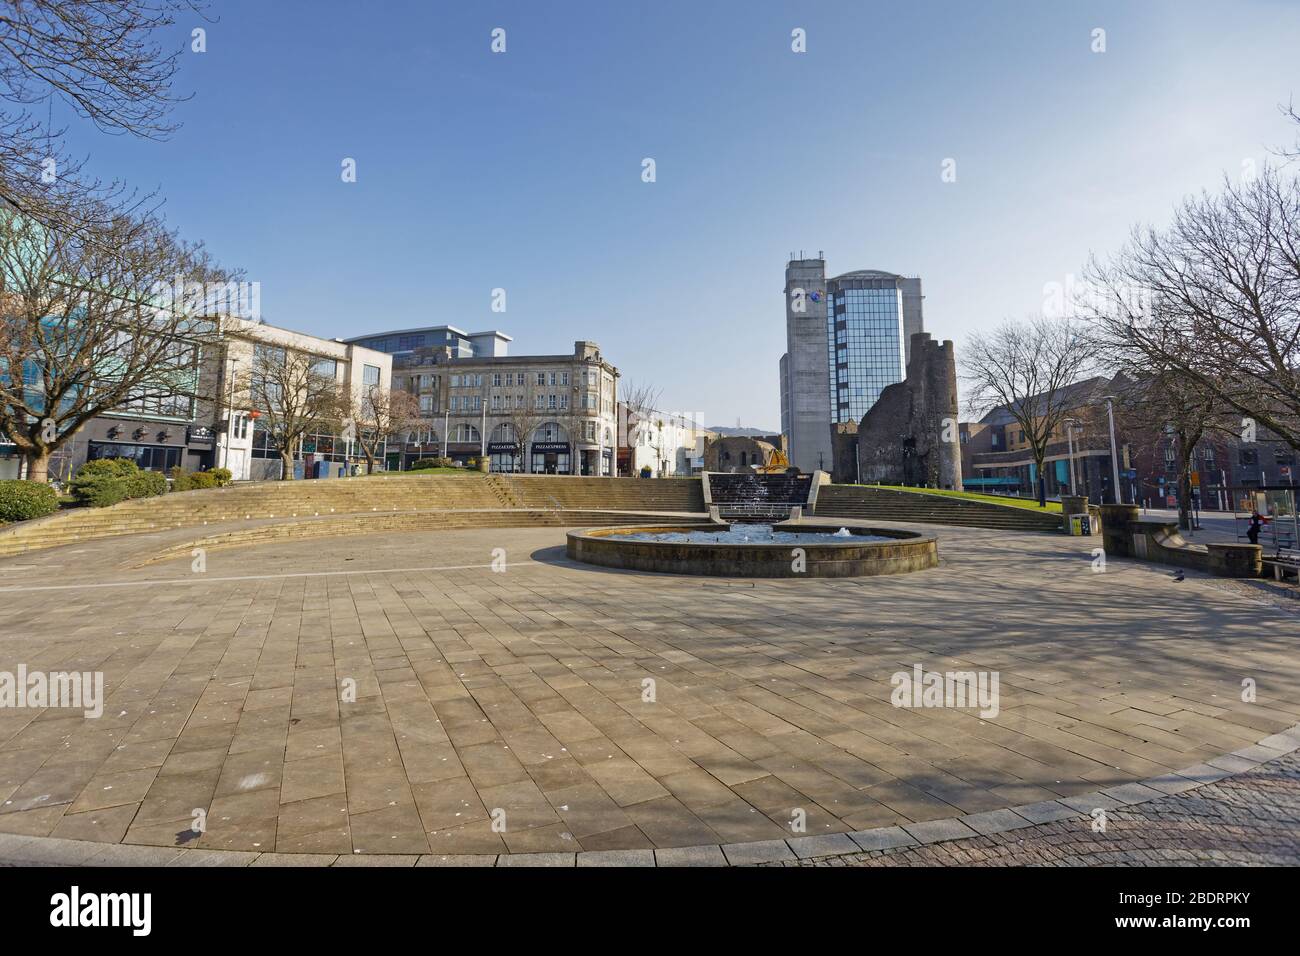 Im Bild: Castle Square im verlassenen Swansea Stadtzentrum, Wales, Großbritannien. Dienstag 24 März 2020 Re: Covid-19 Coronavirus Pandemie, UK. Stockfoto